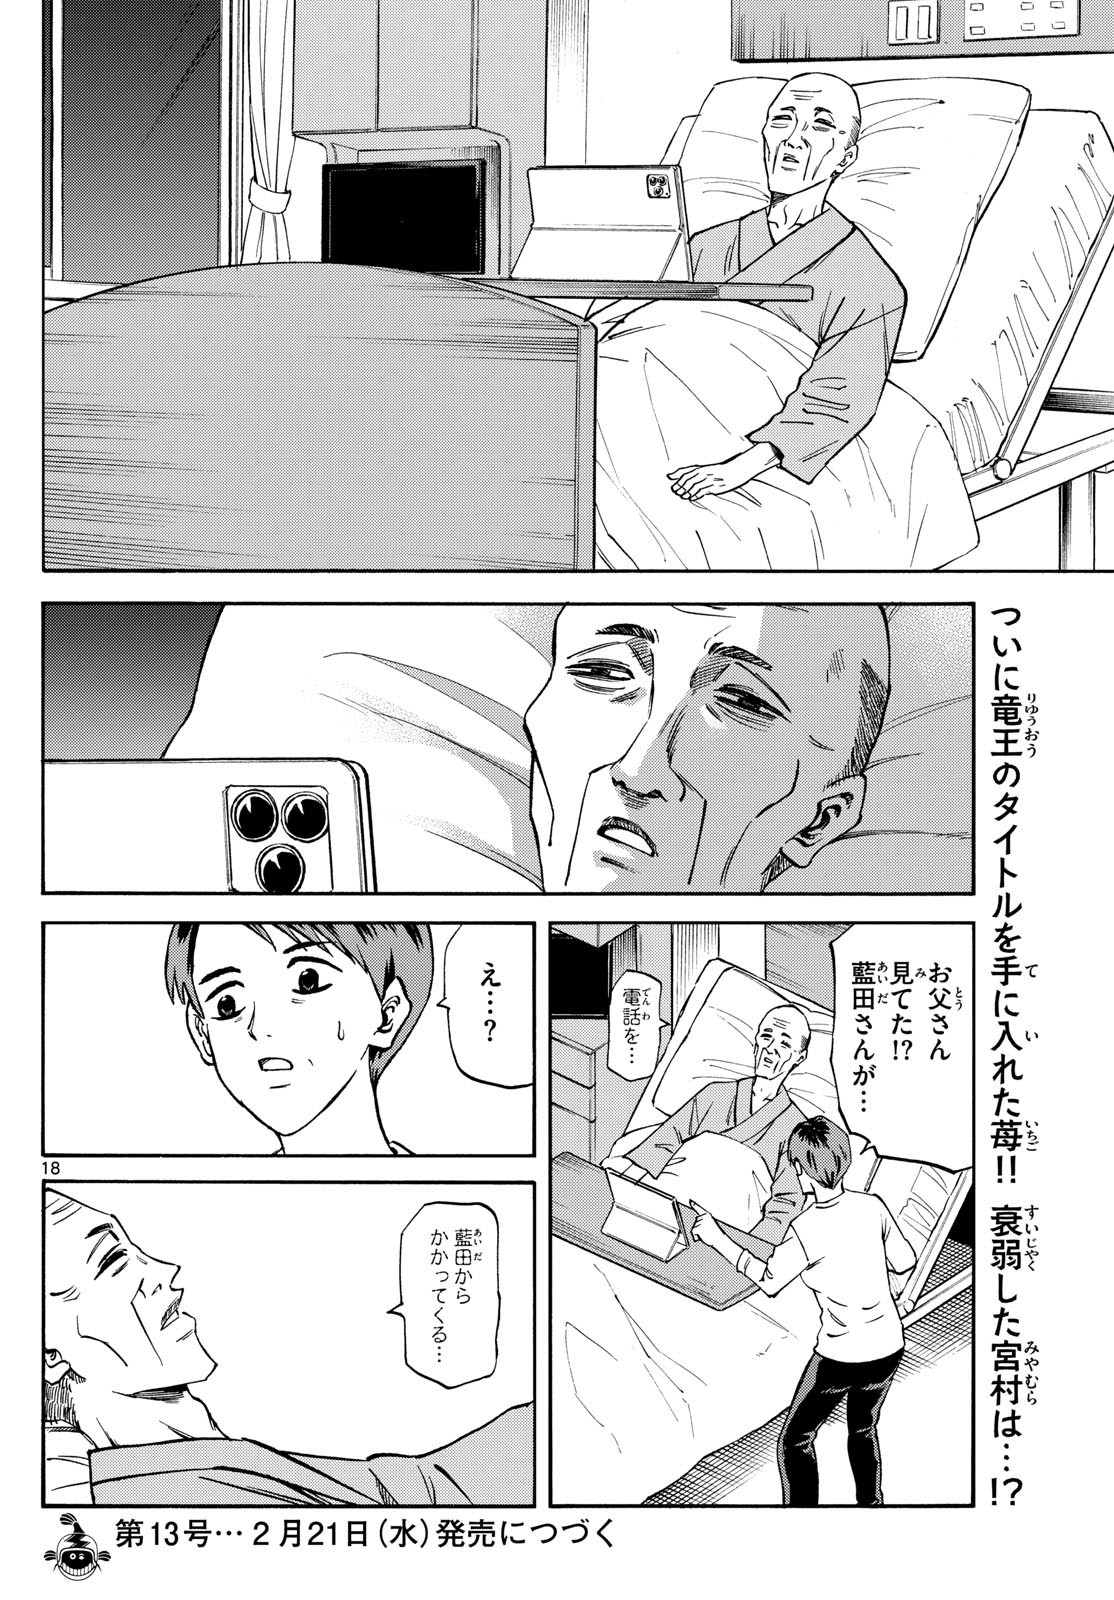 Ryu-to-Ichigo - Chapter 179 - Page 18